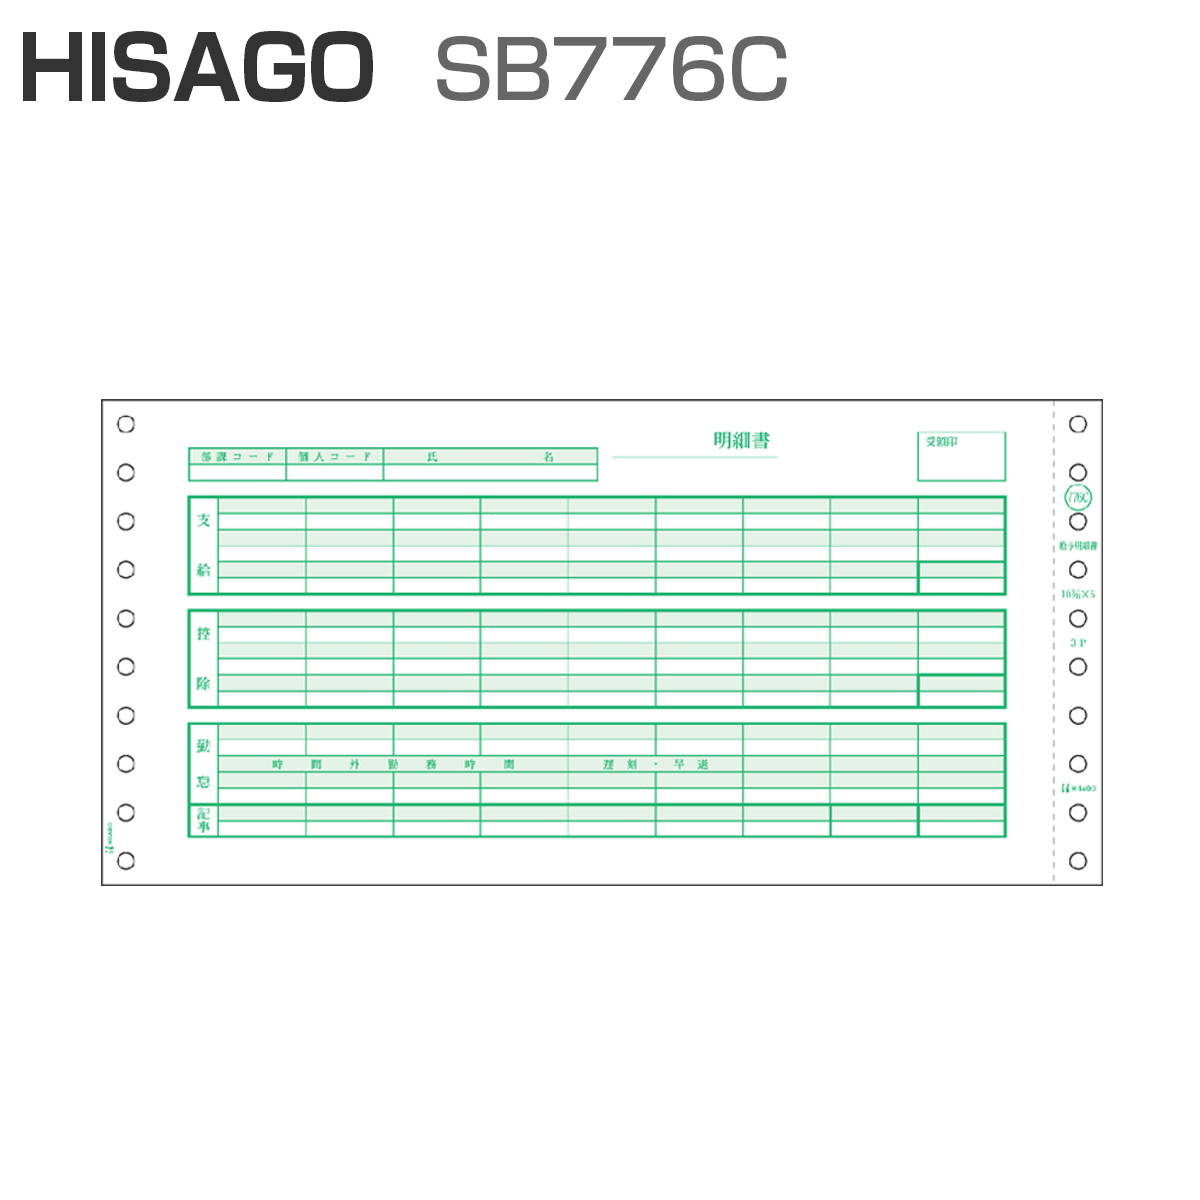 ヒサゴ コンピュータ用帳票 ドットプリンタ用 SB776C 1000セット - 4